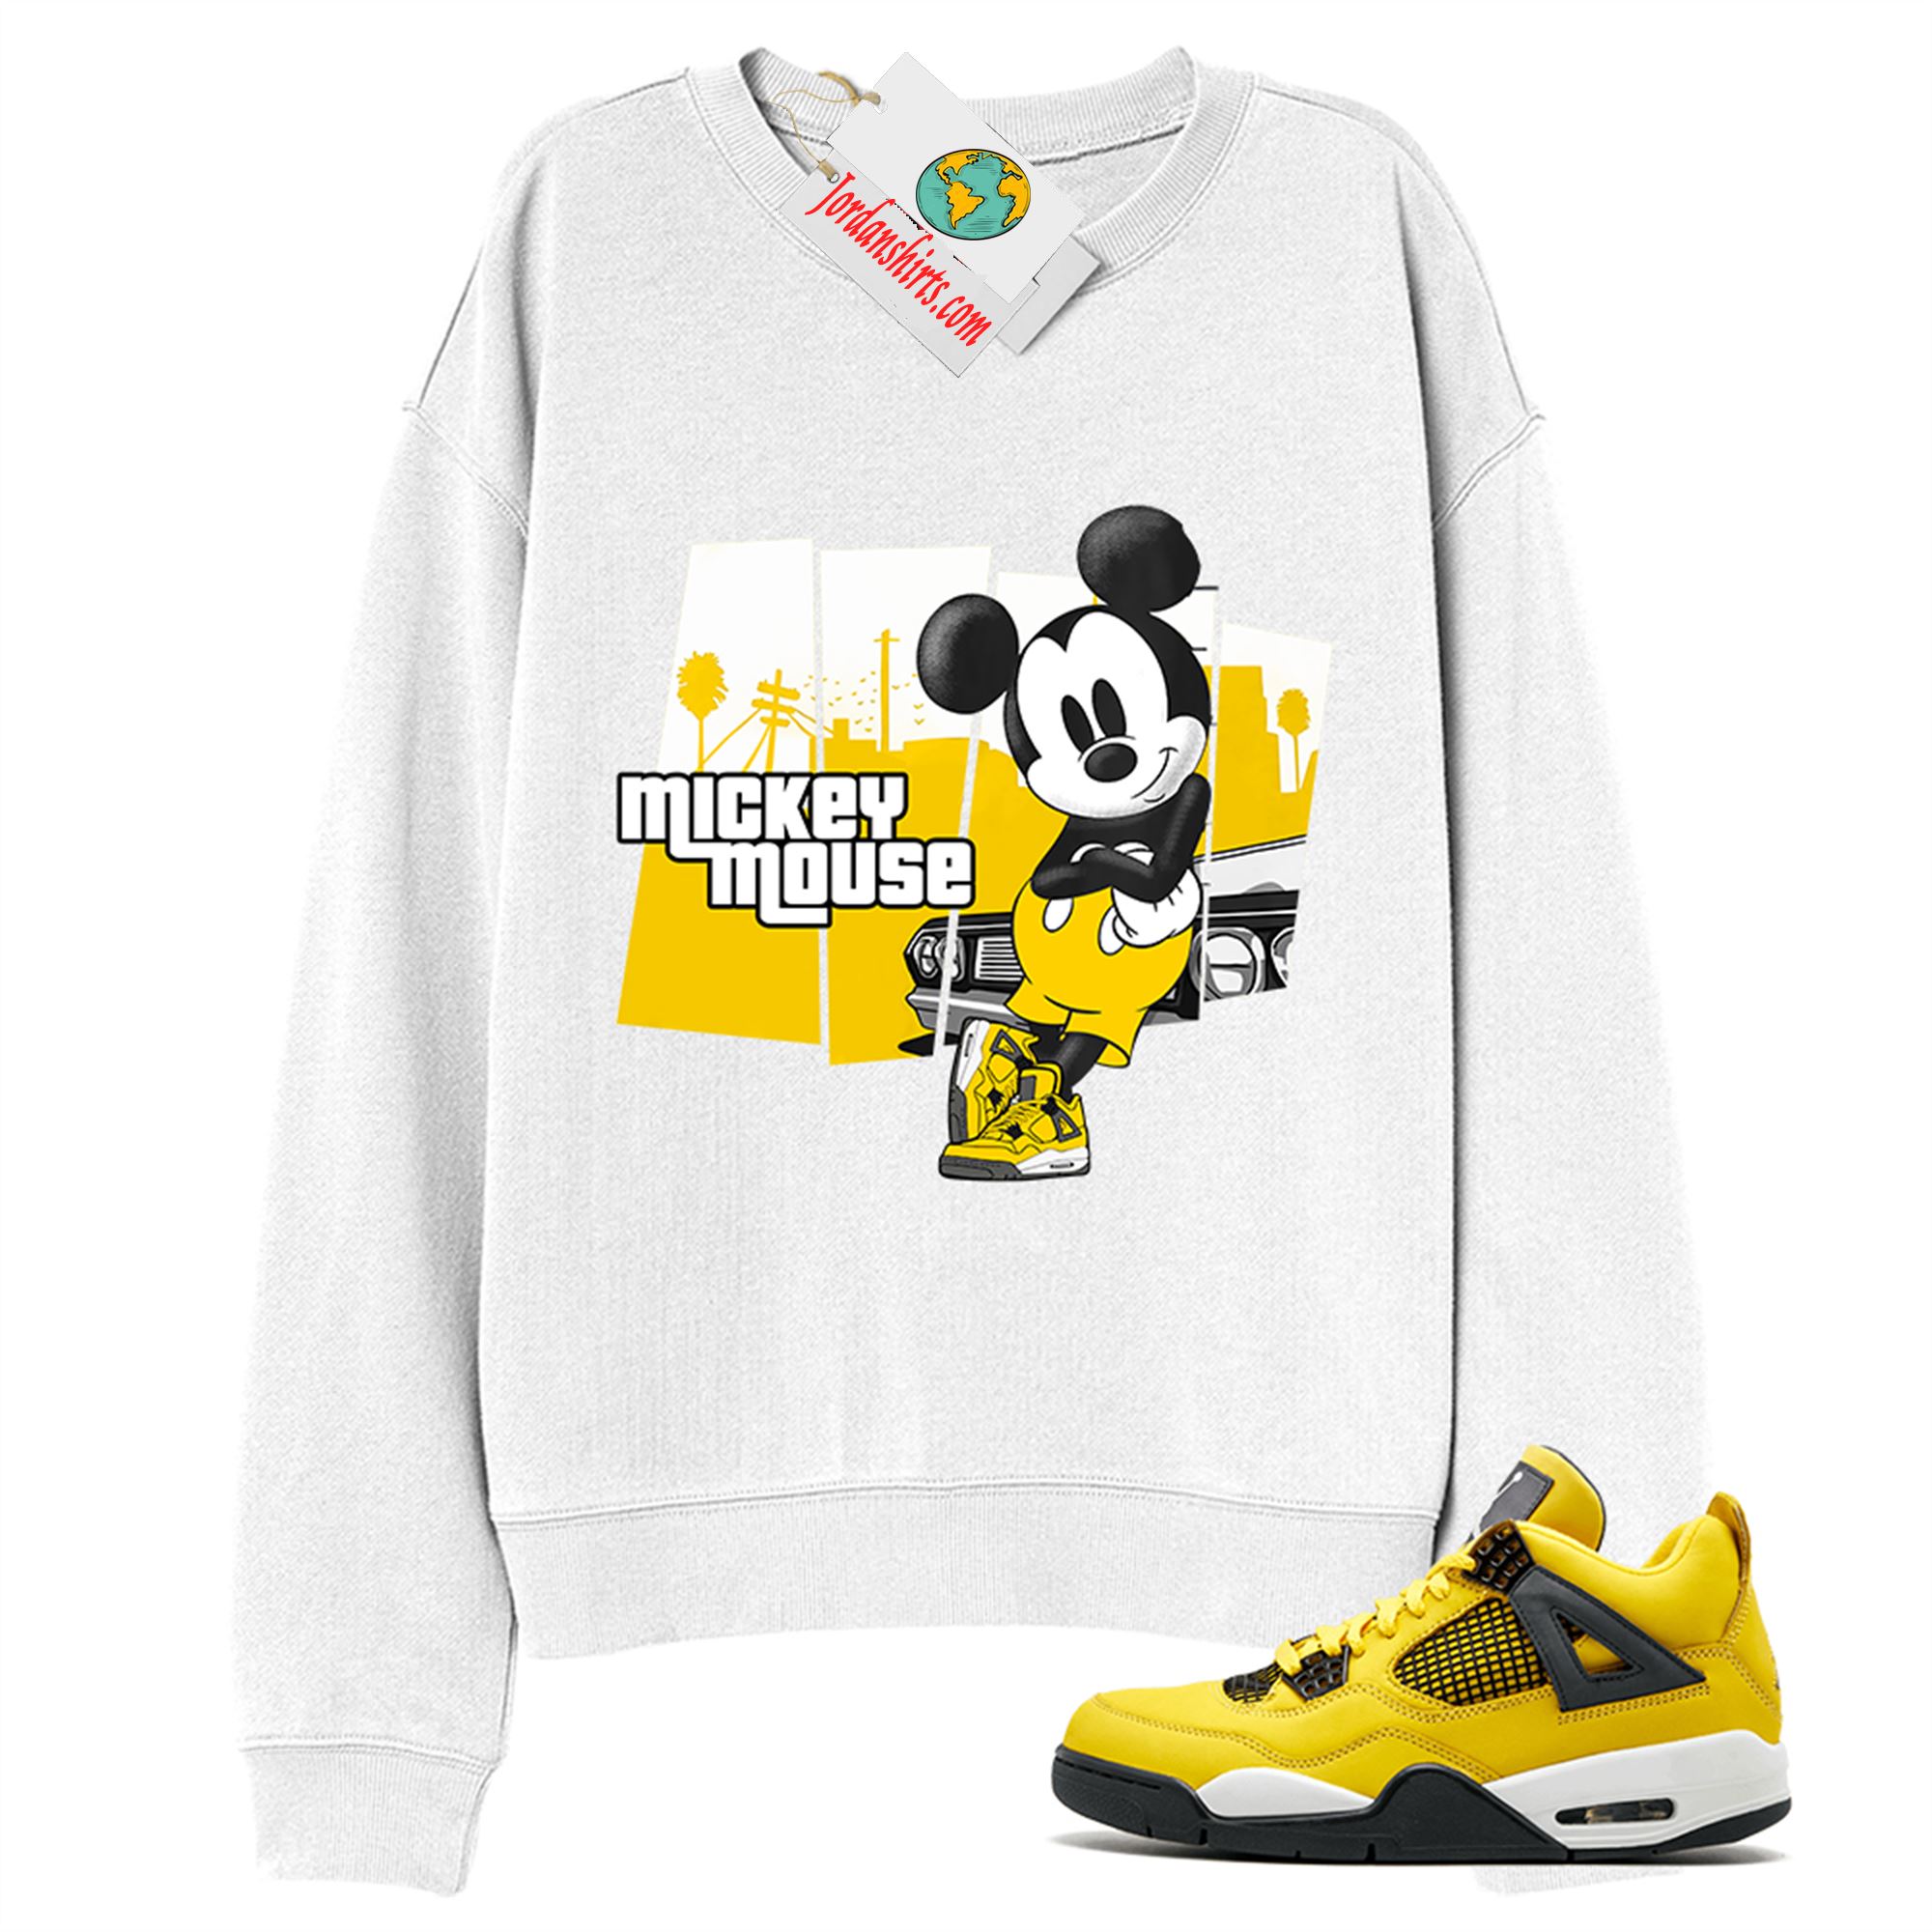 Jordan 4 Sweatshirt, Mickey Gta White Sweatshirt Air Jordan 4 Tour Yellow Lightning 4s Size Up To 5xl